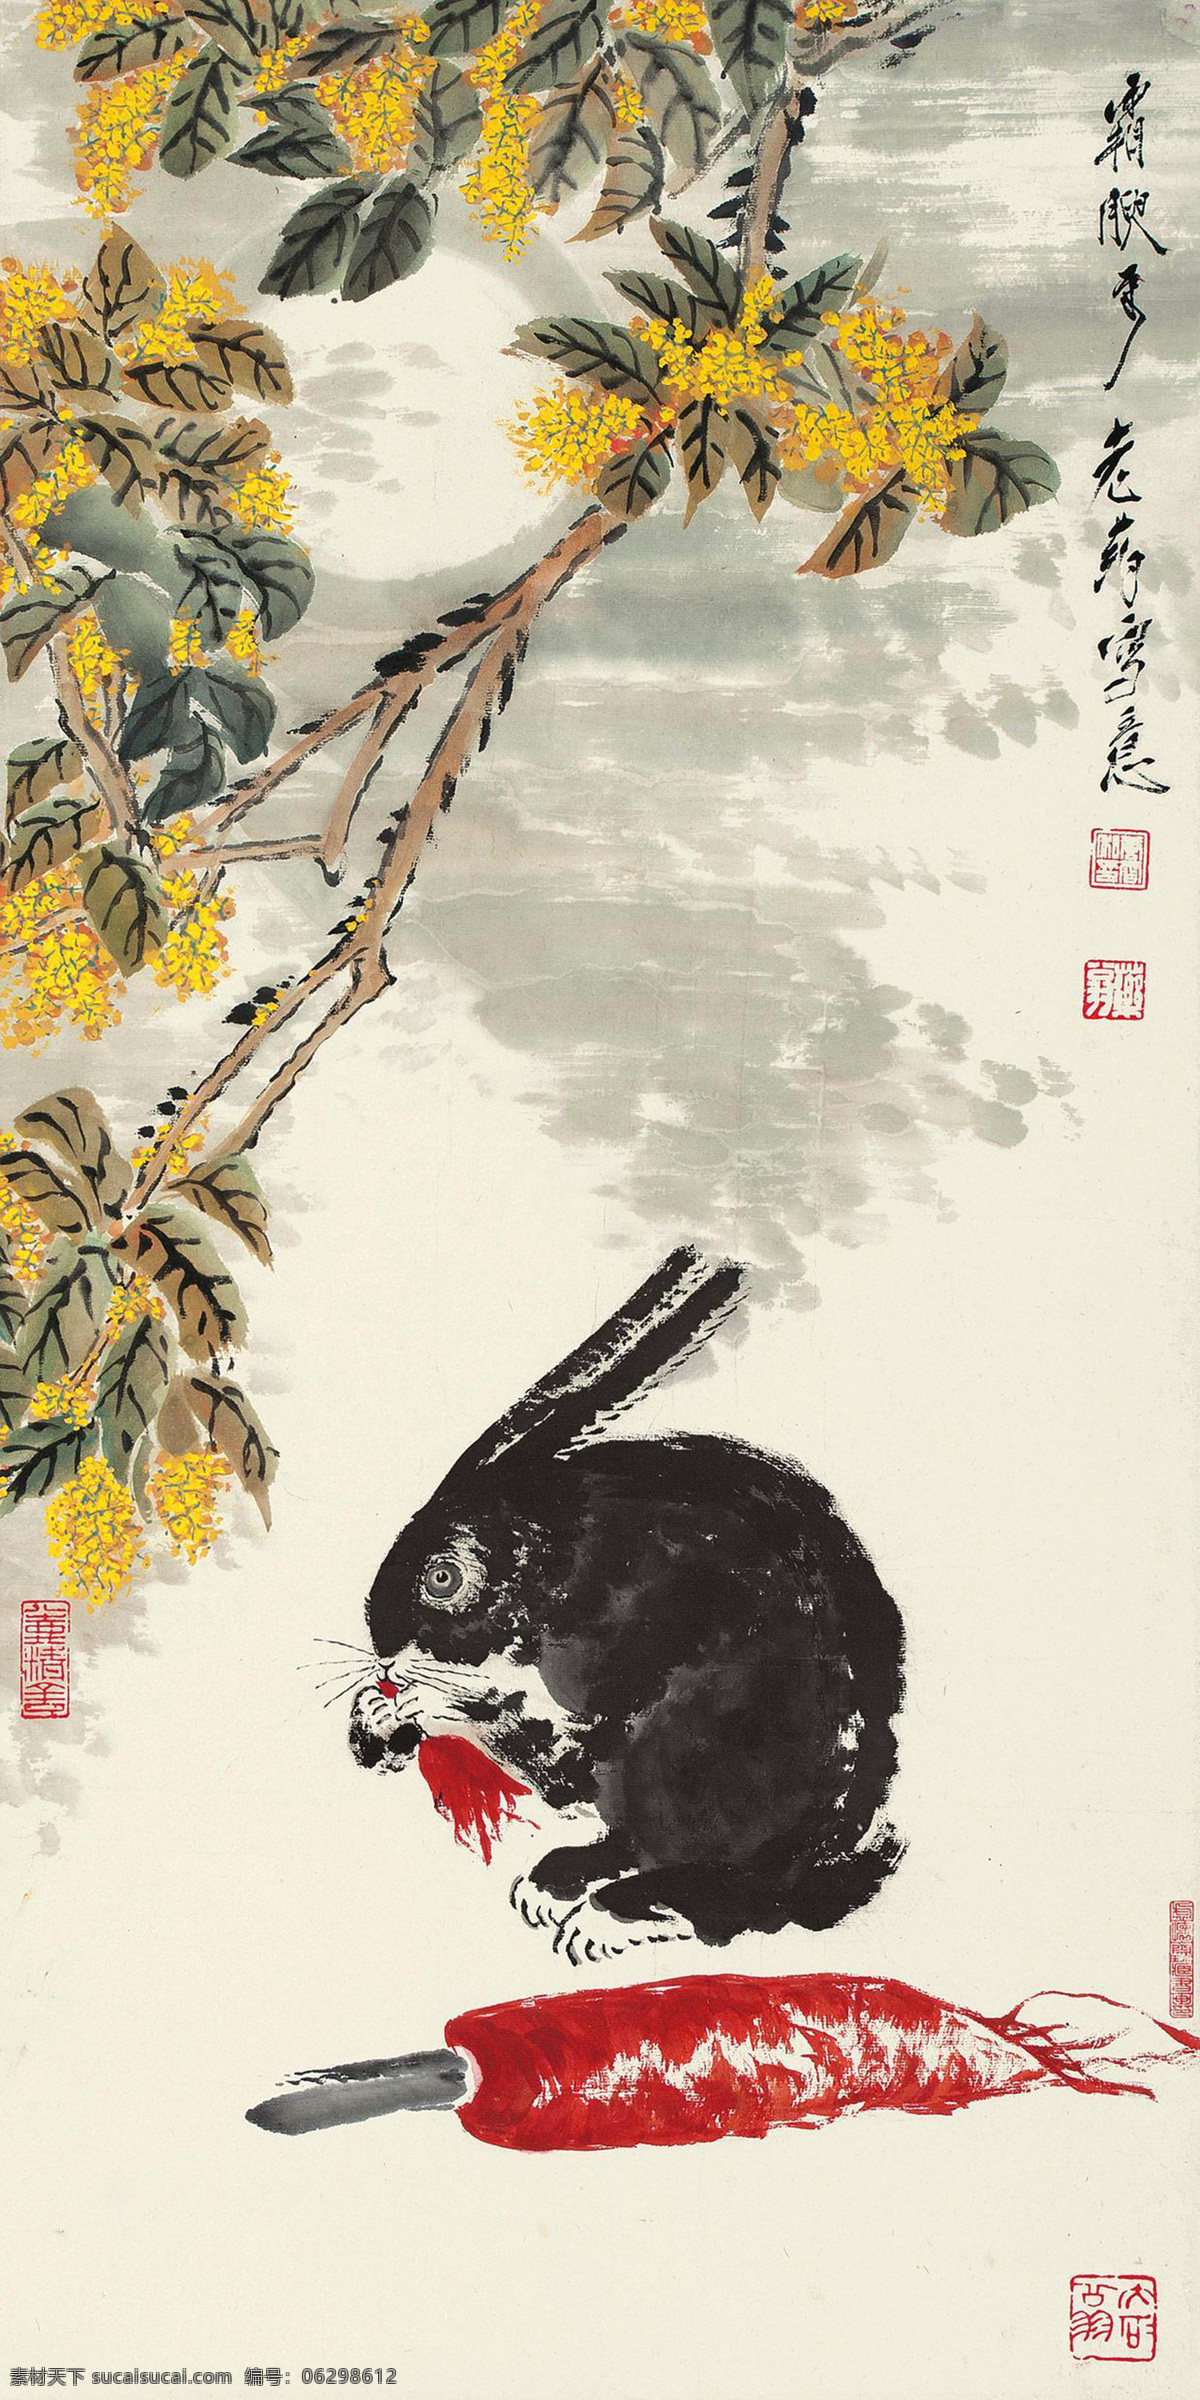 月宫图 唐云 国画 兔子 小兔 萝卜 月宫 写意 水墨画 花鸟 中国画 绘画书法 文化艺术 白色